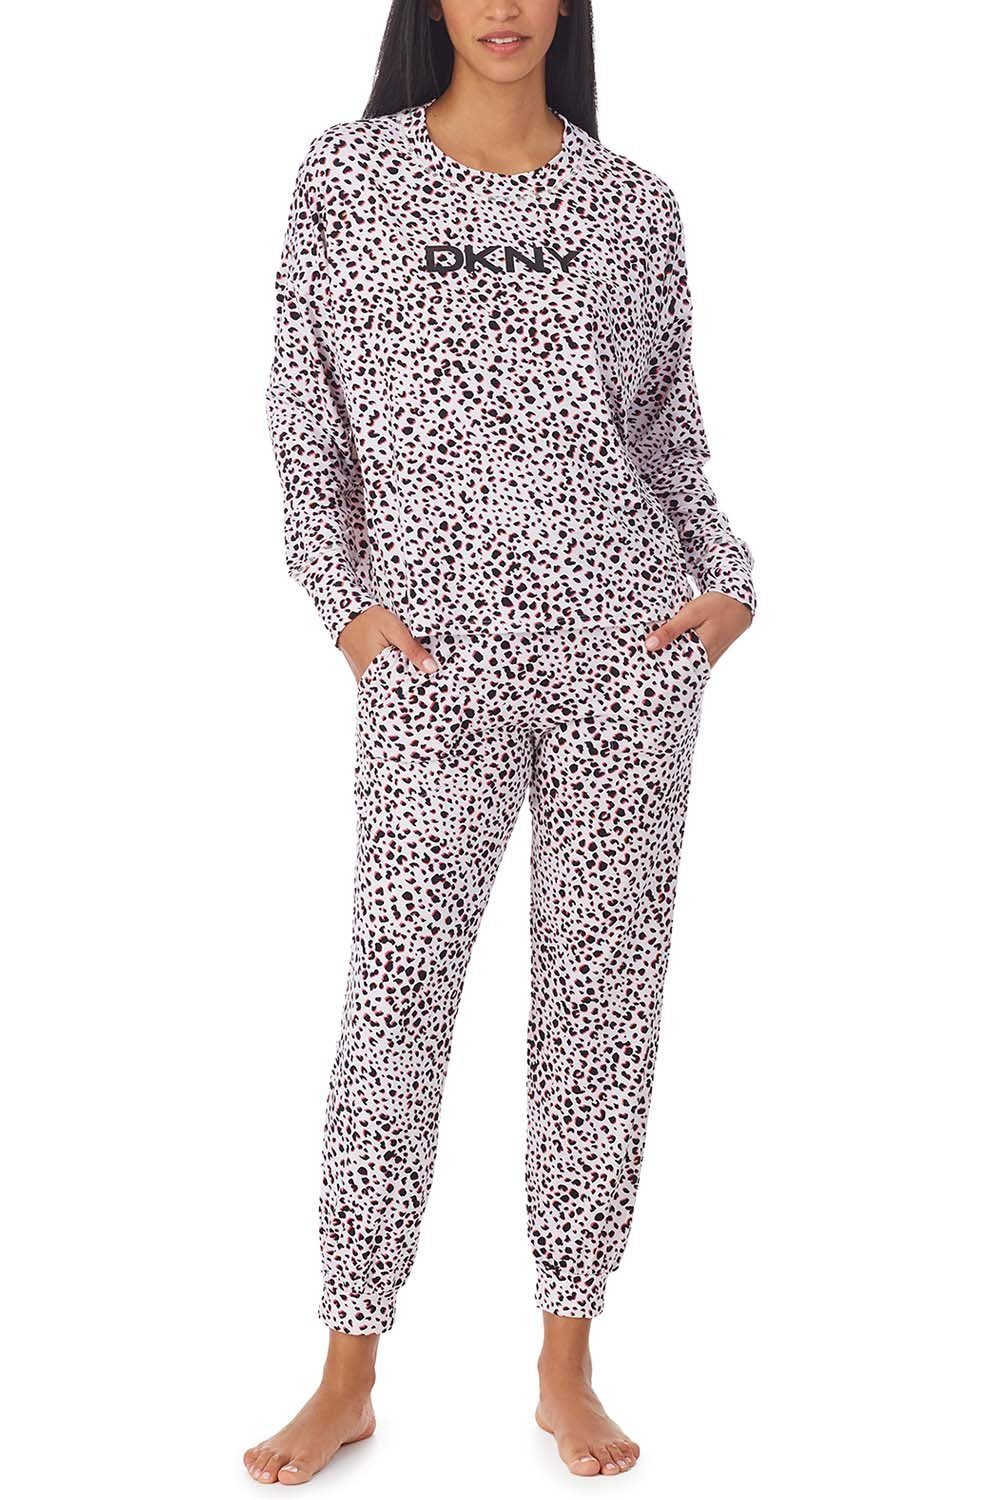 DKNY & Pyjama Set Jogger YI3022523 Top